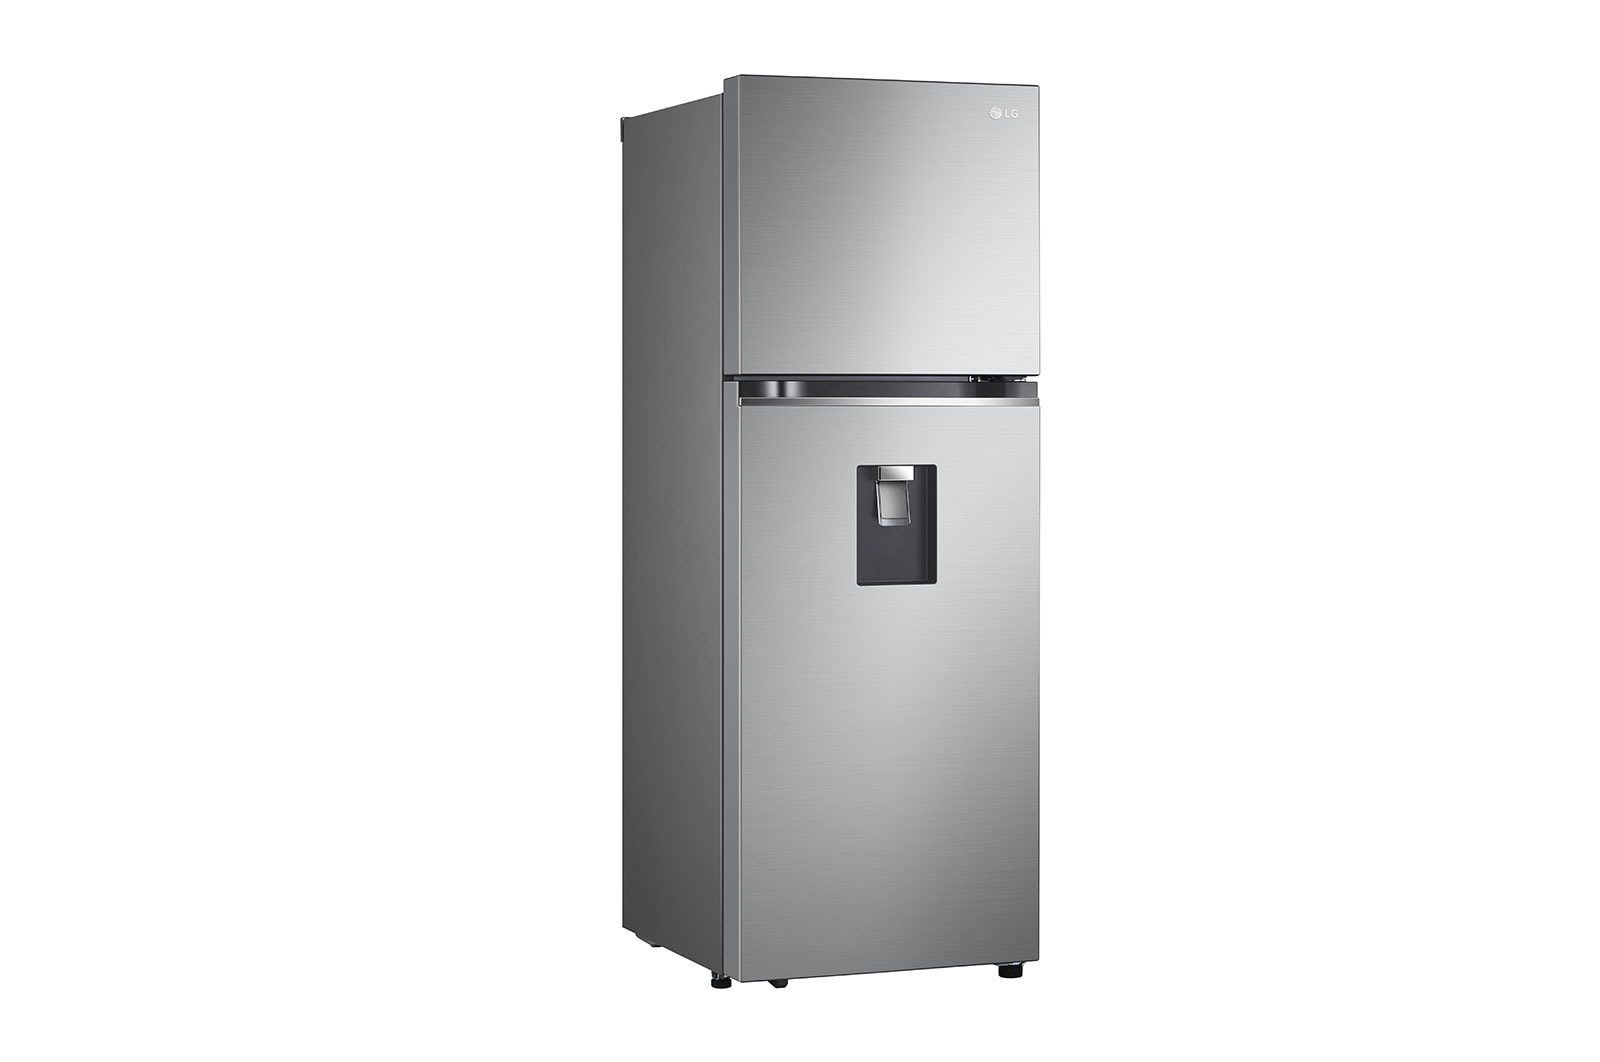 LG Smart Inverter 314L Tủ lạnh ngăn đá trên với công nghệ Door Cooling (Bạc), hình phía trước khi mở, GN-D312PS